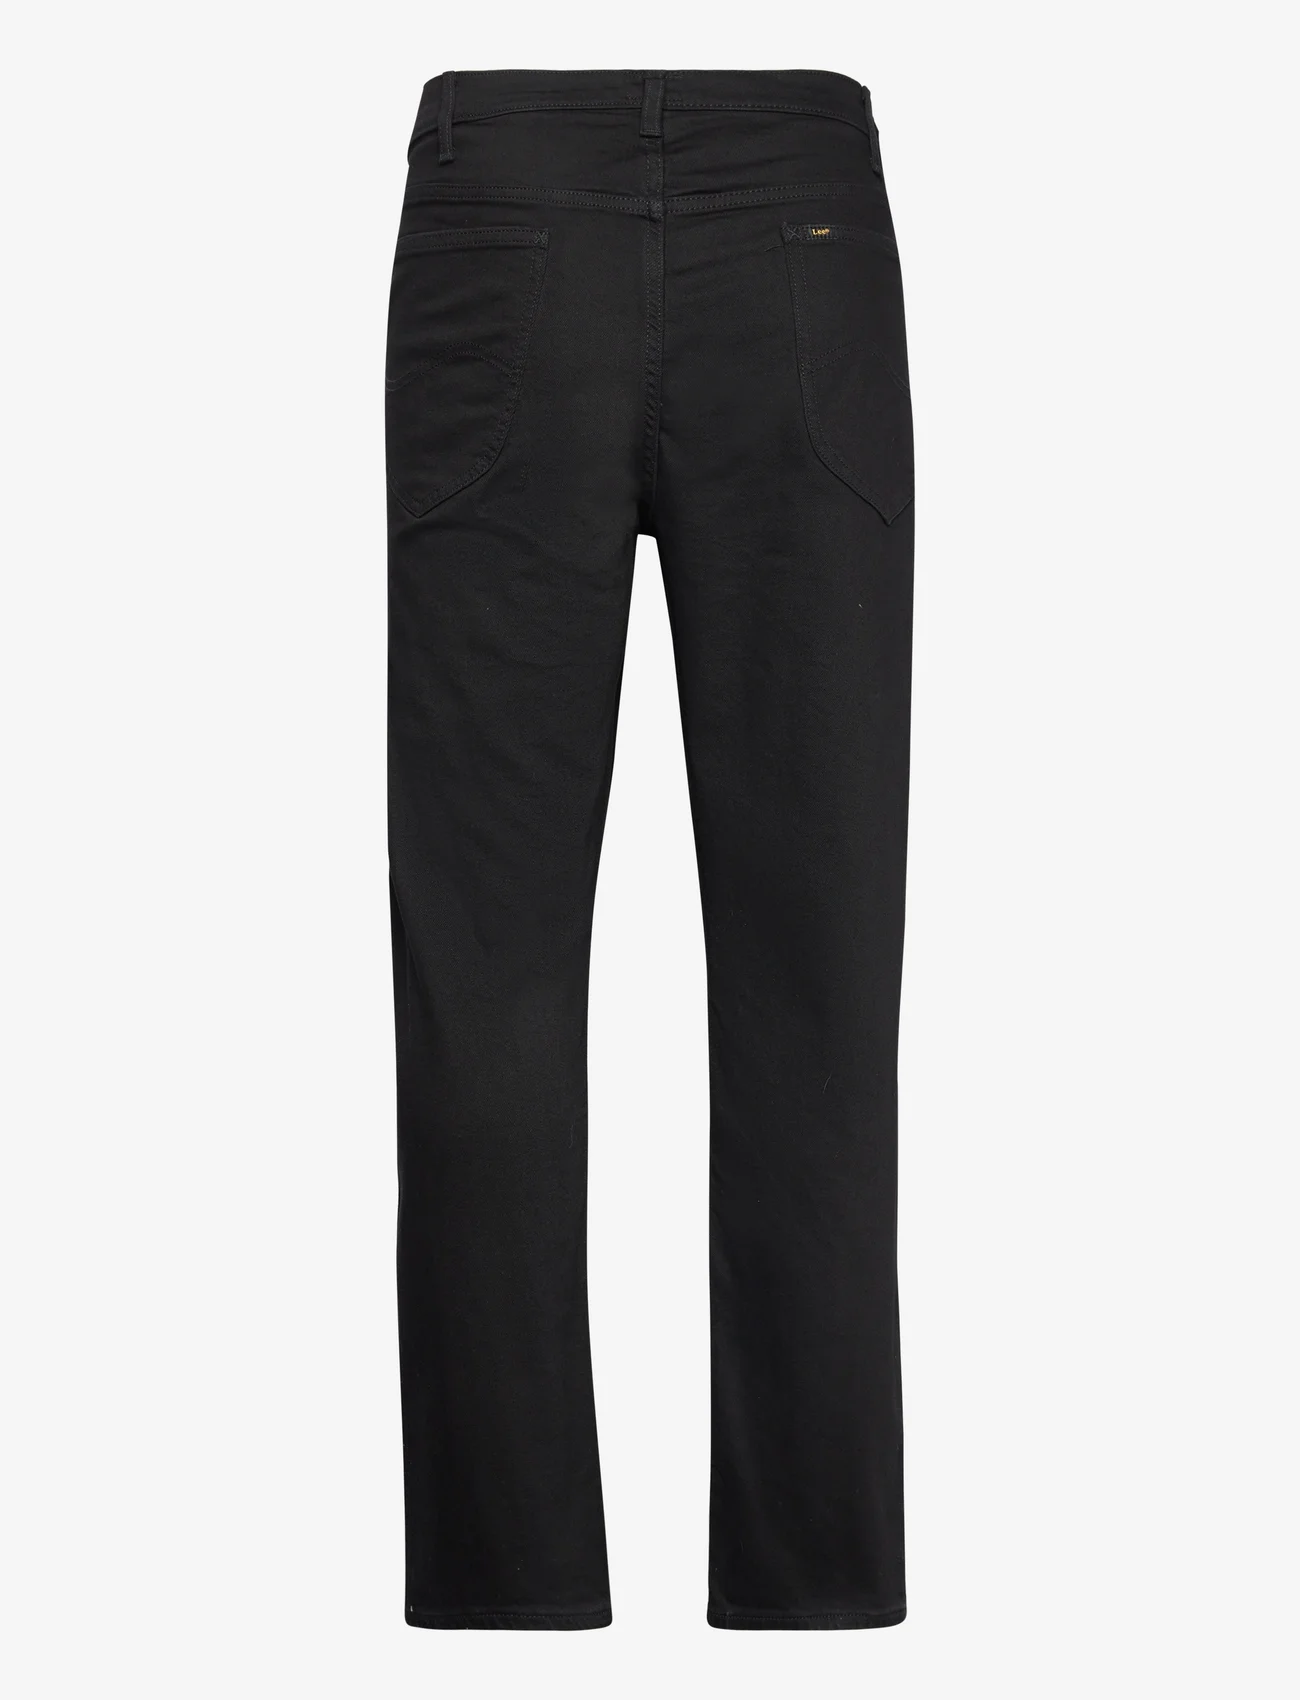 Lee Jeans - DAREN ZIP FLY - Įprasto kirpimo džinsai - black rinse - 1